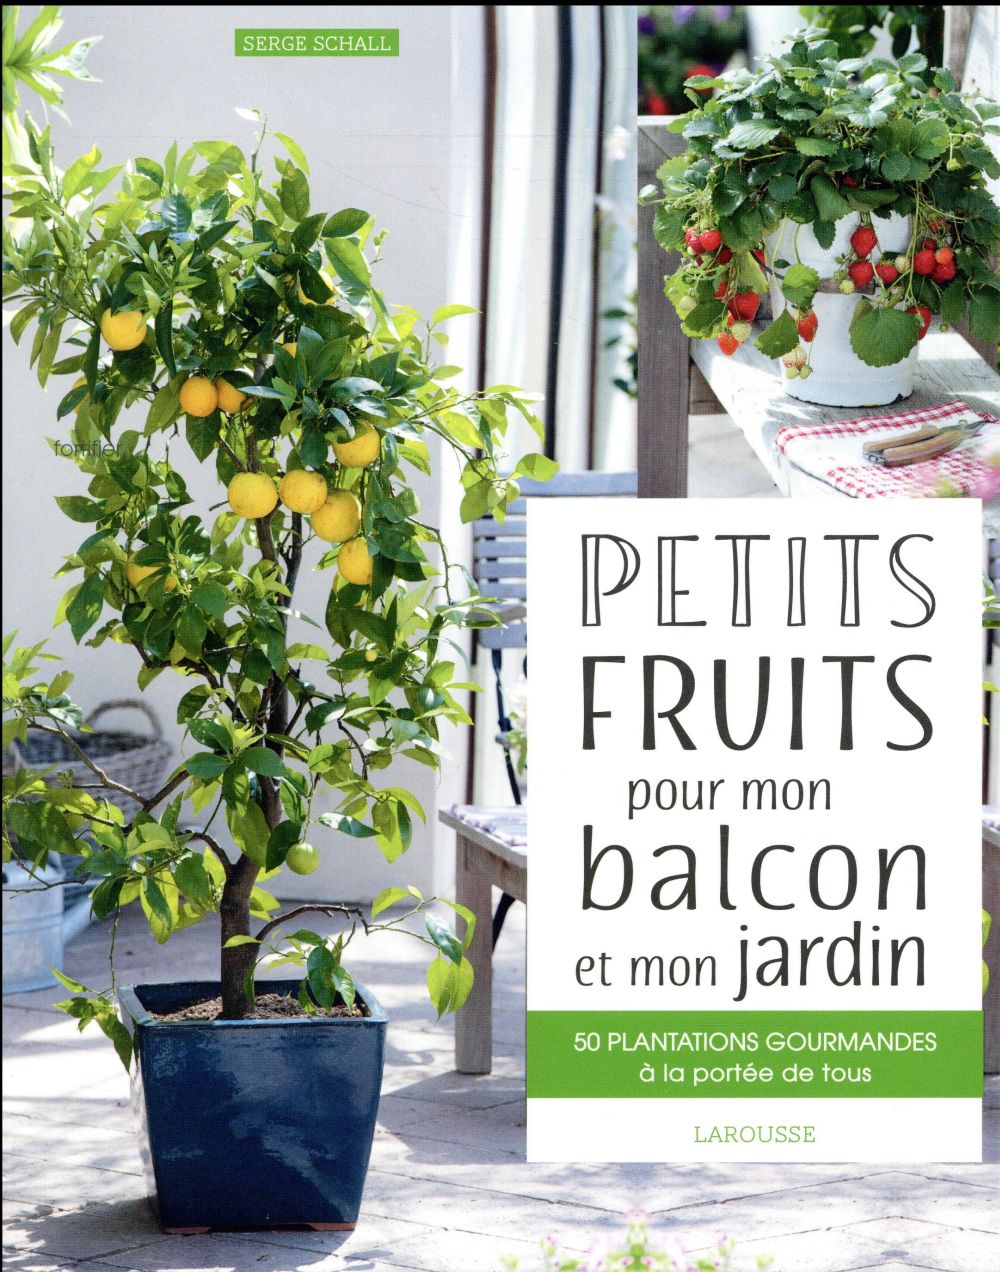 PETITS FRUITS POUR MON BALCON ET MON JARDIN - 50 PLANTATIONS GOURMANDES A LA PORTEE DE TOUS